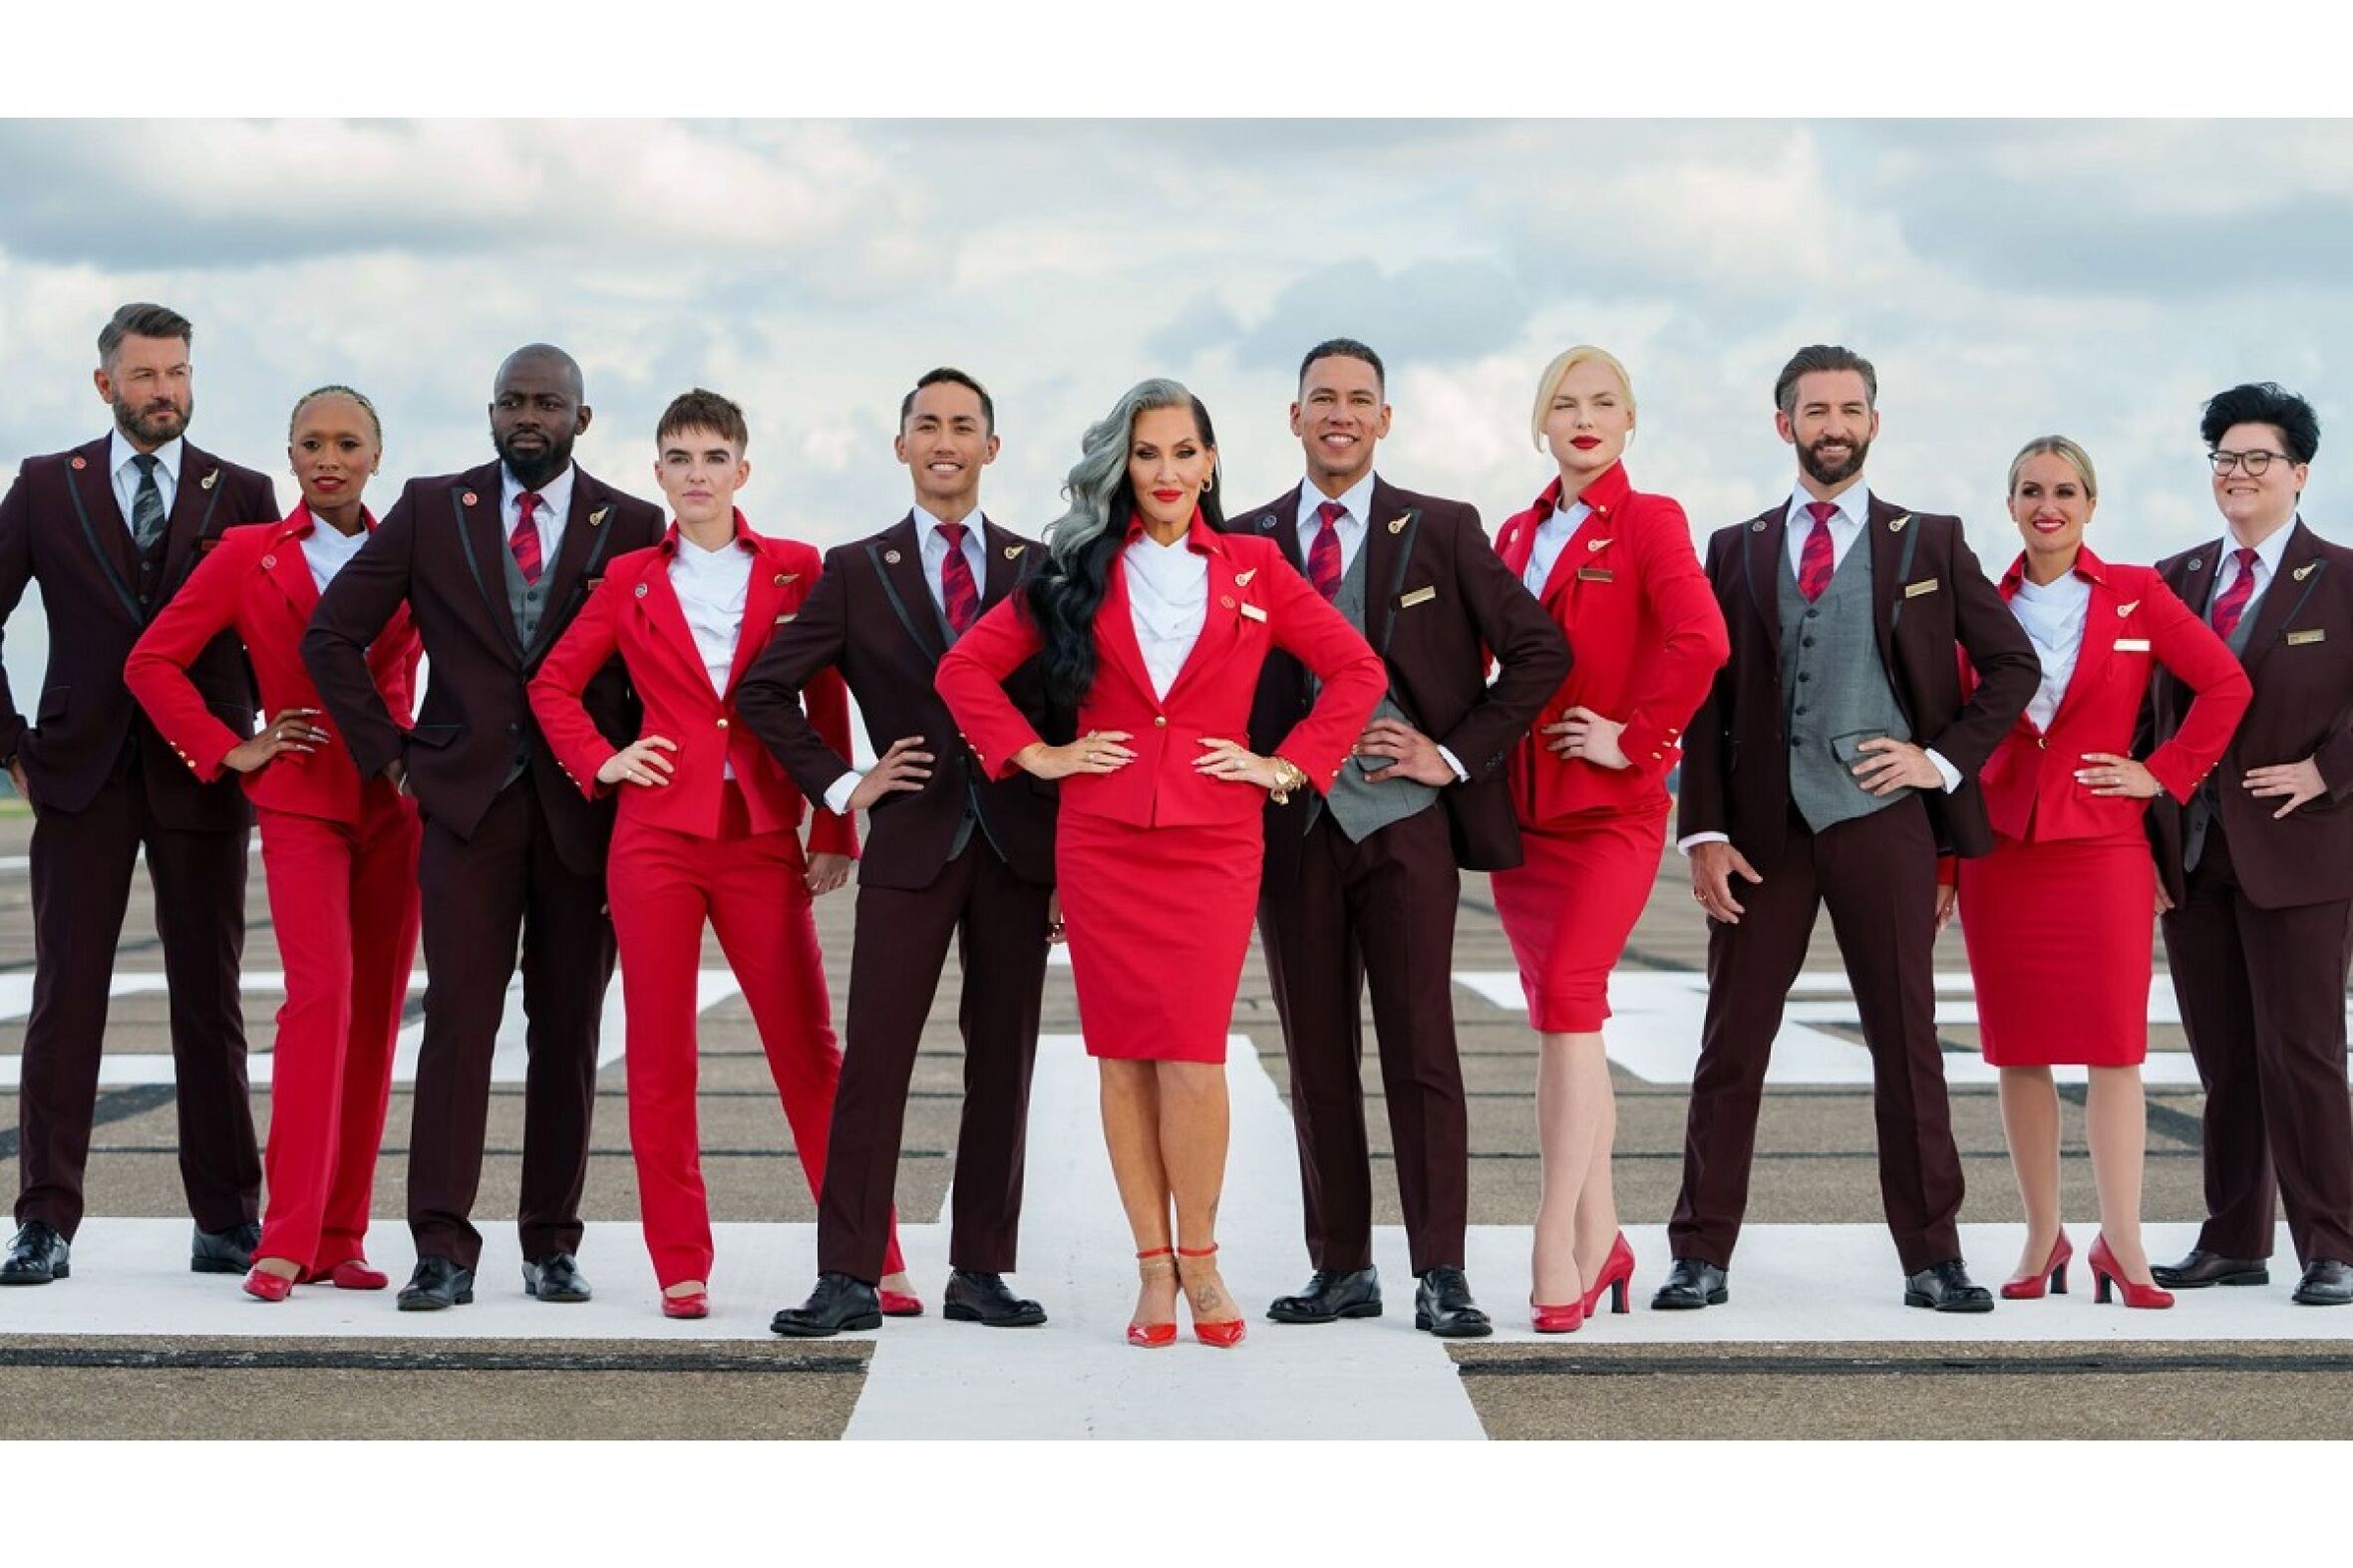 Os uniformes desta companhia aérea não têm género